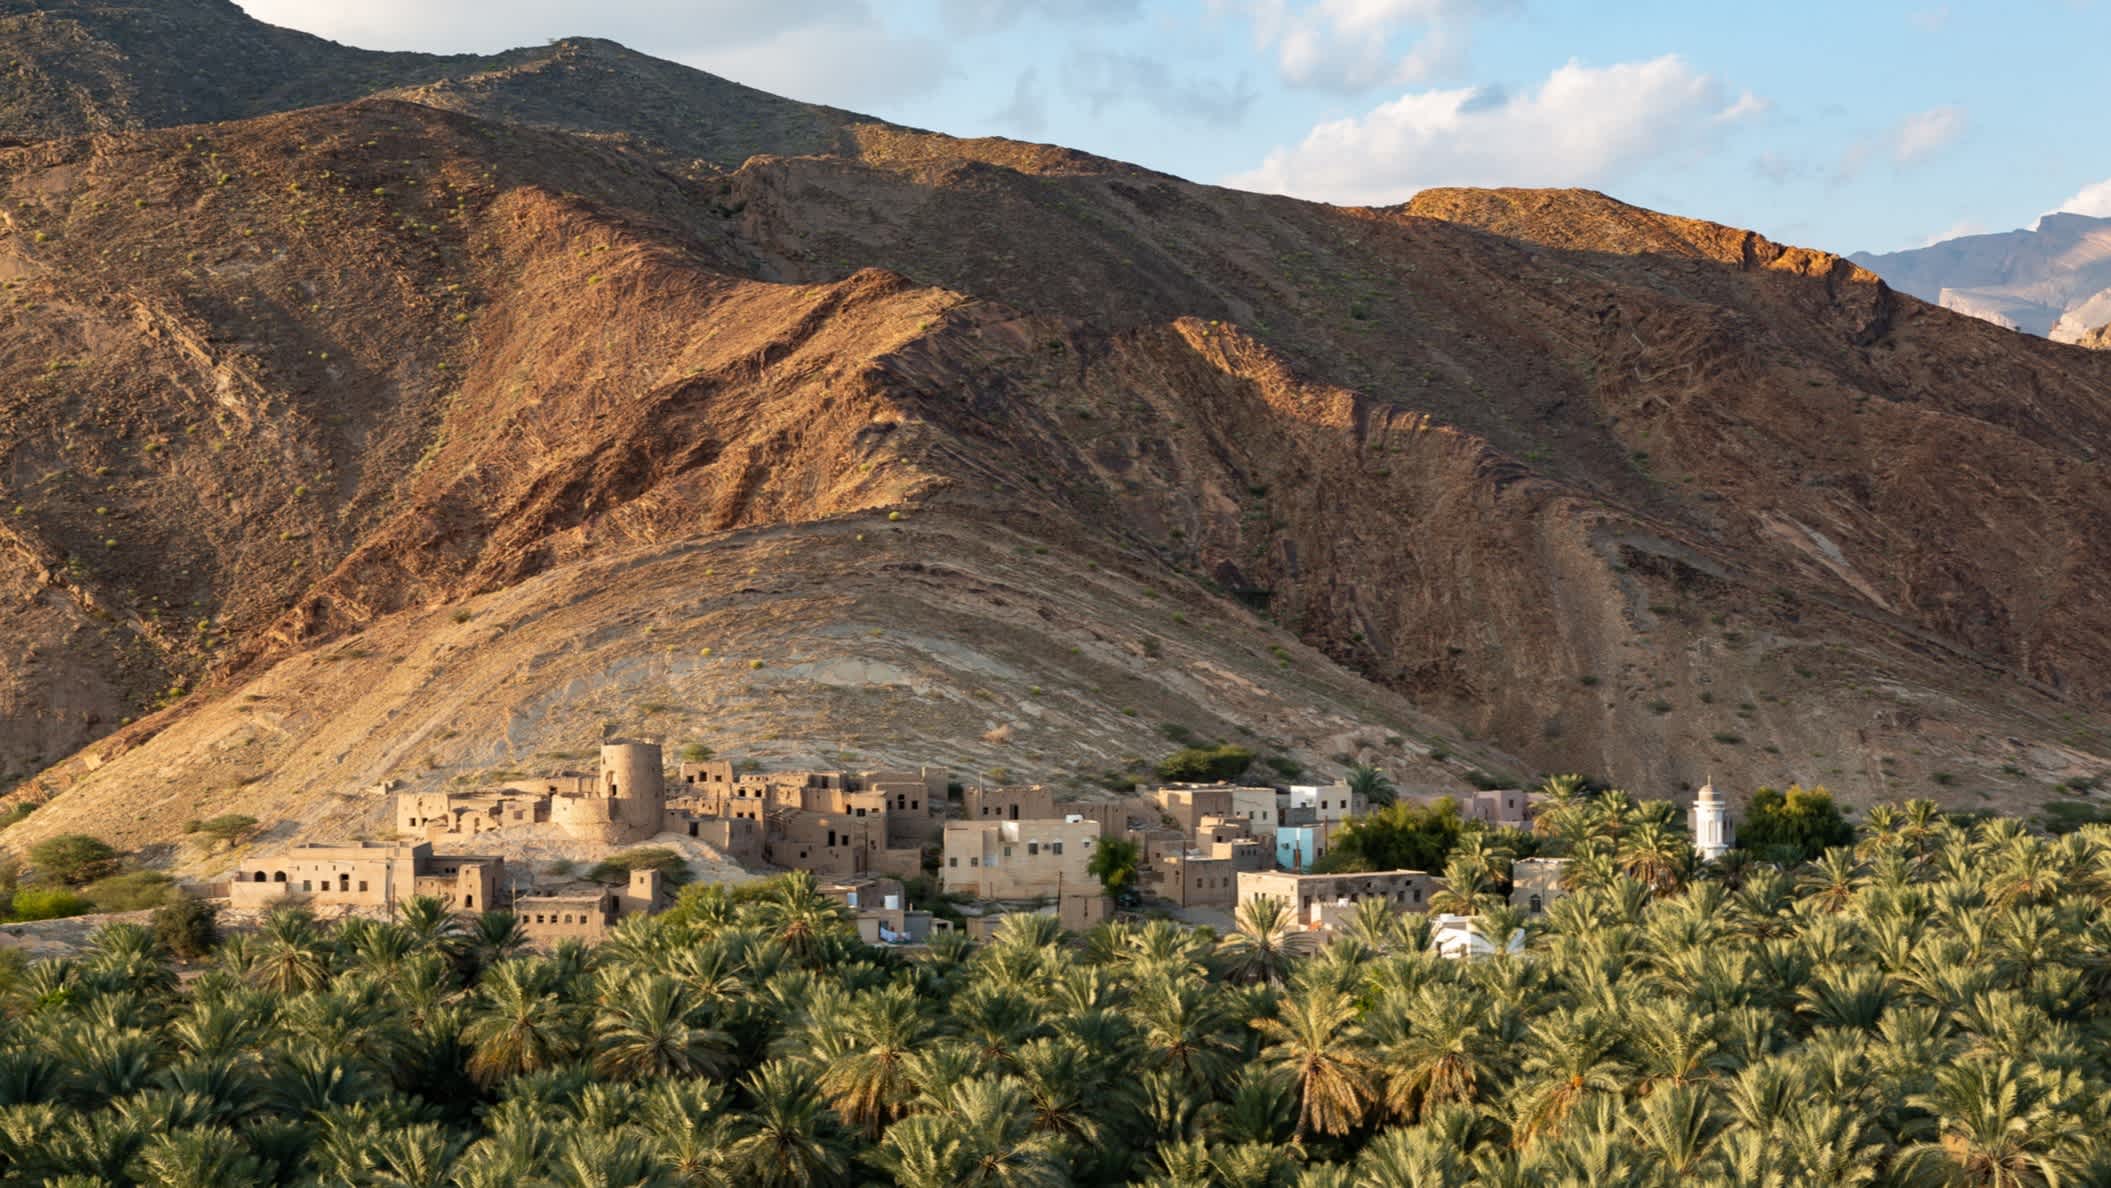 Blick auf Ruinen des verlassenen Birkat al Mawz mit Dattelpalmen im Vordergrund, Oman.